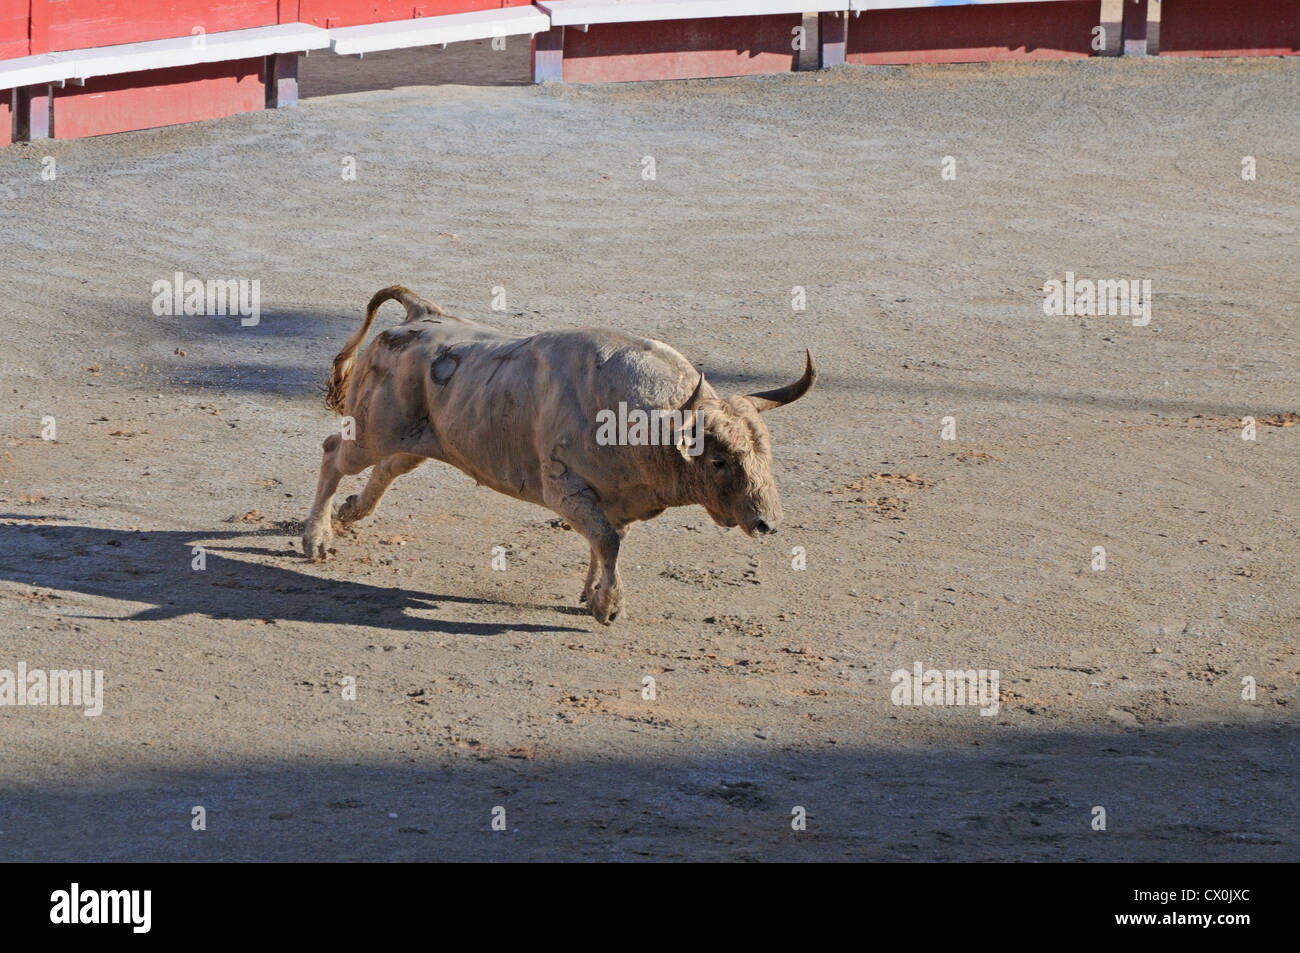 Toro enojado empezando un cargo durante la corrida corrida en la arena romana Arles Francia Foto de stock